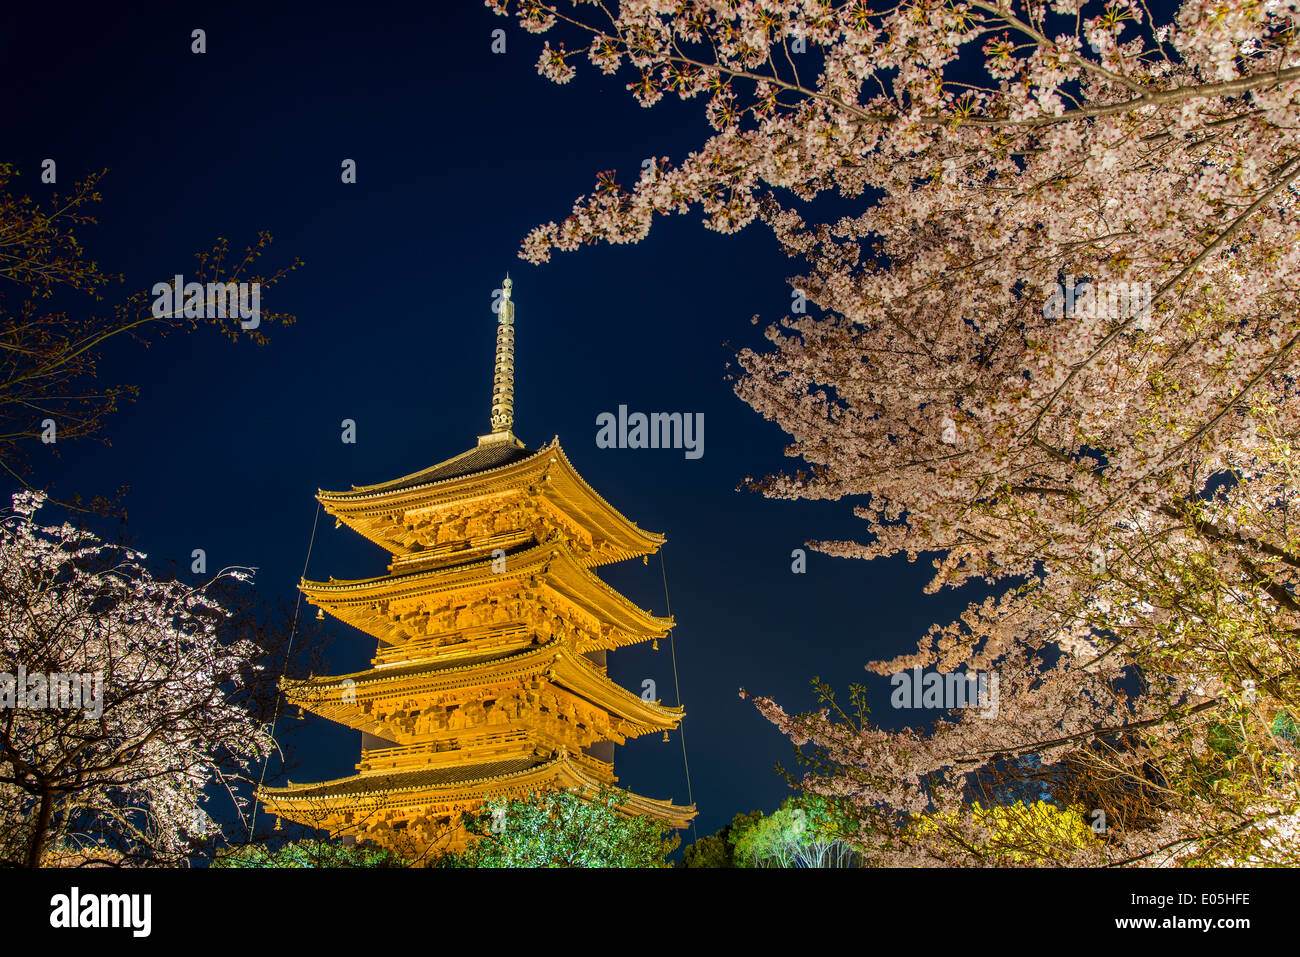 Blooming cherry tree éclairés la nuit avec de la pagode du temple Toji derrière, Kyoto, Japon Banque D'Images